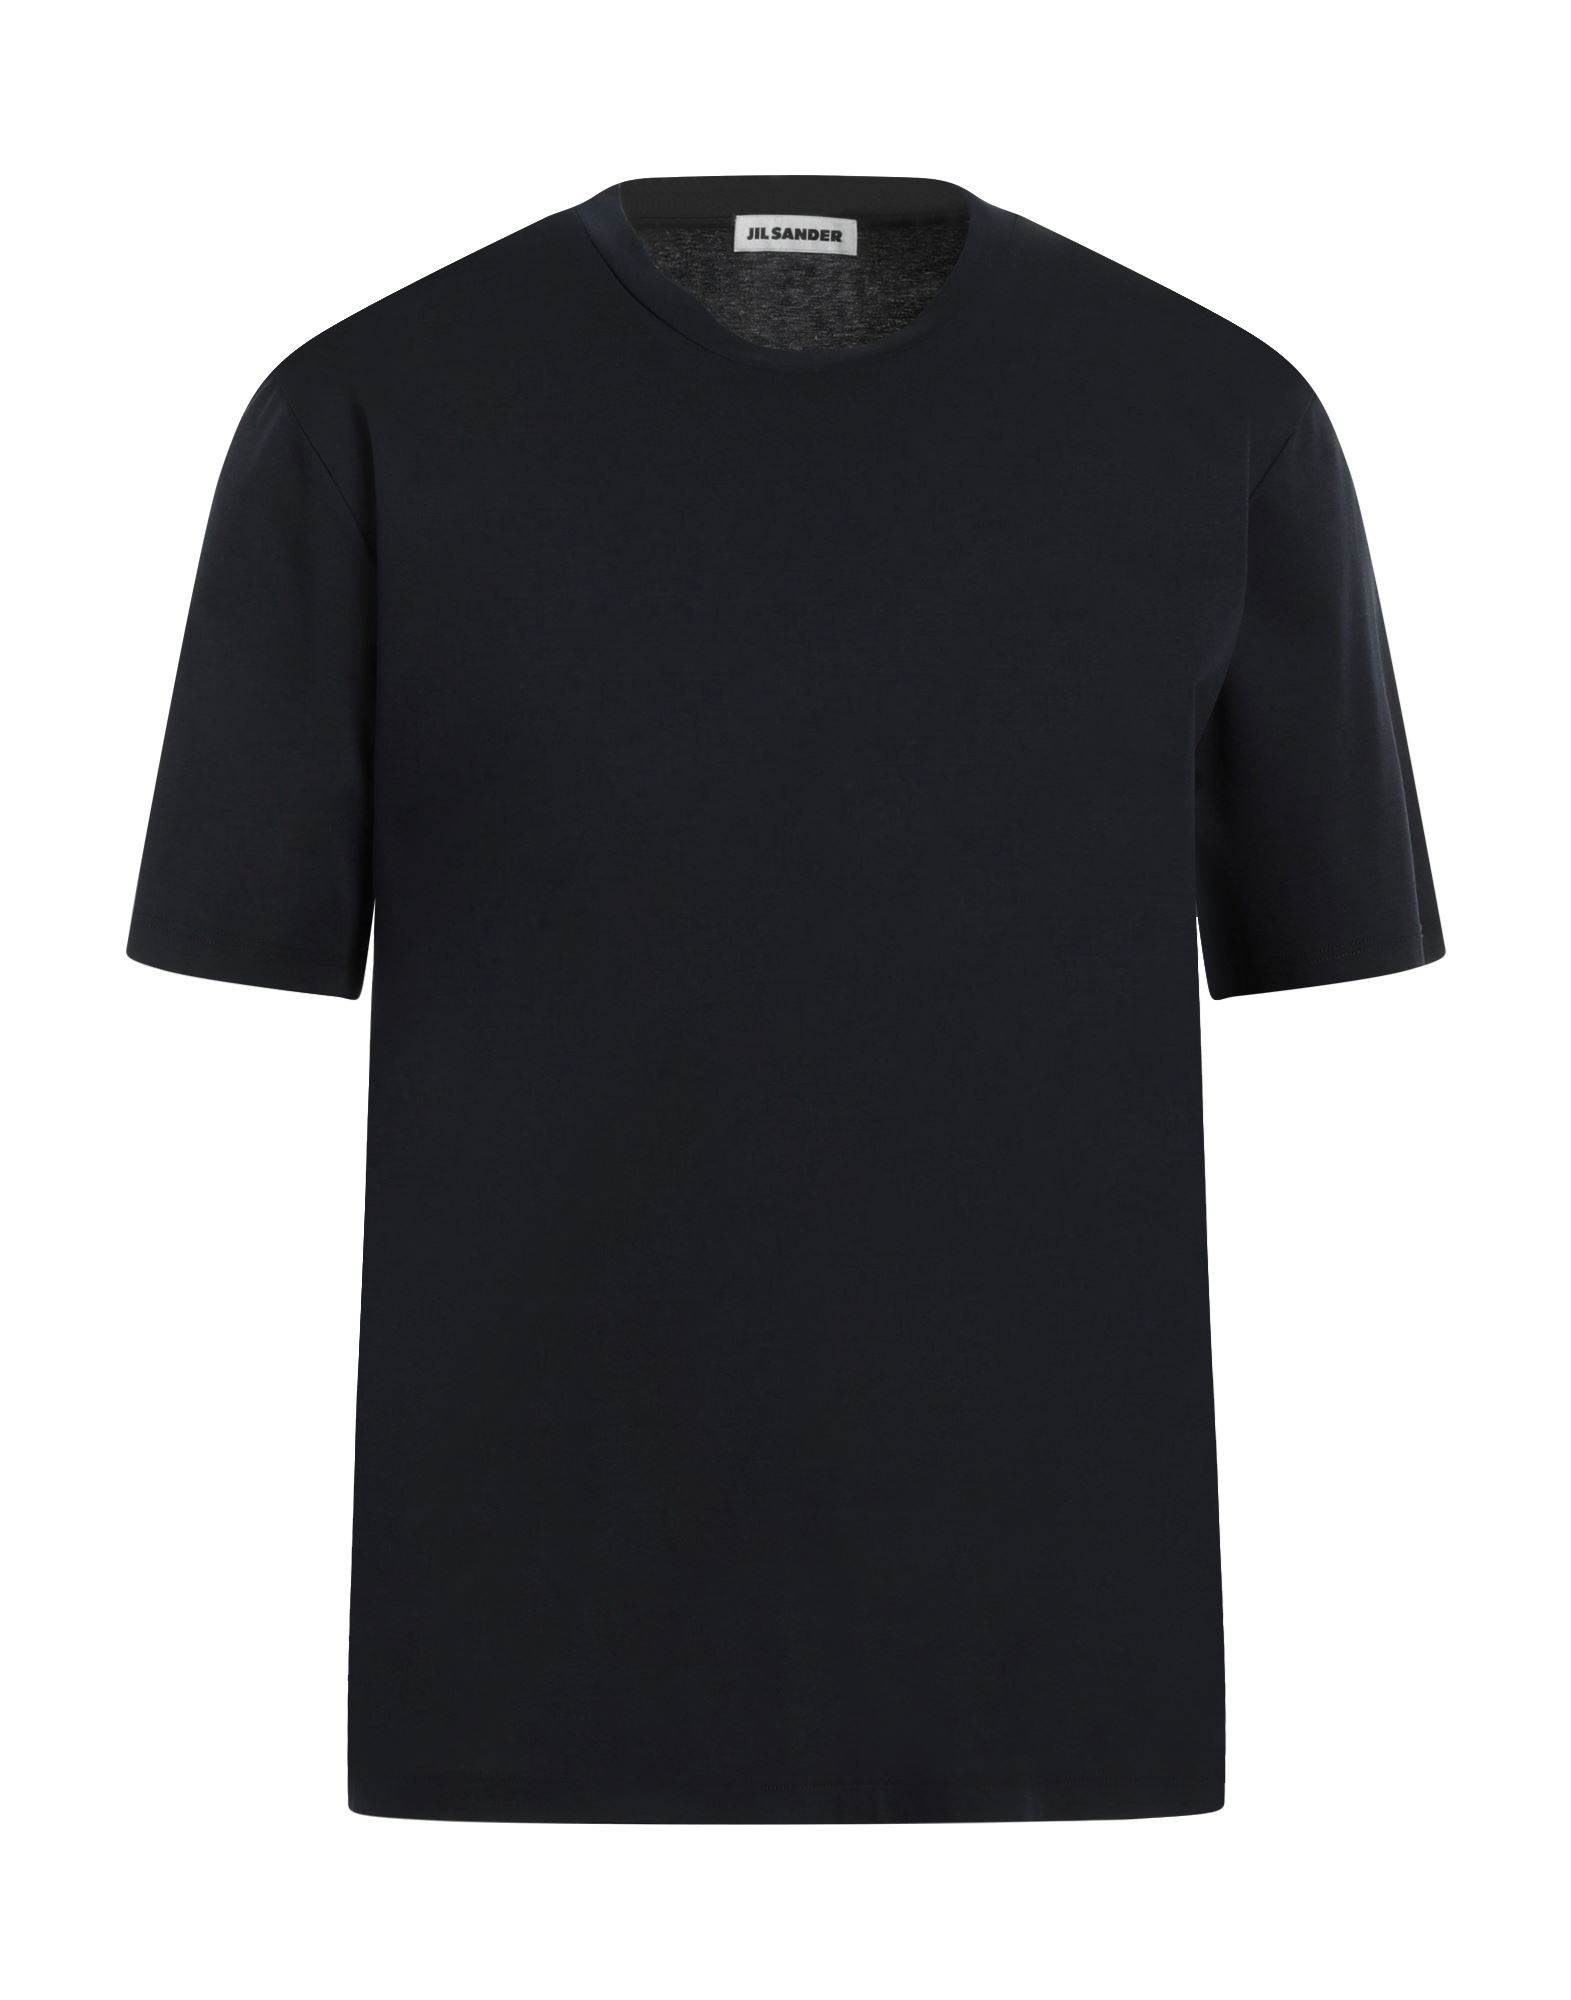 ジル・サンダー(JIL SANDER) メンズTシャツ・カットソー | 通販・人気 ...